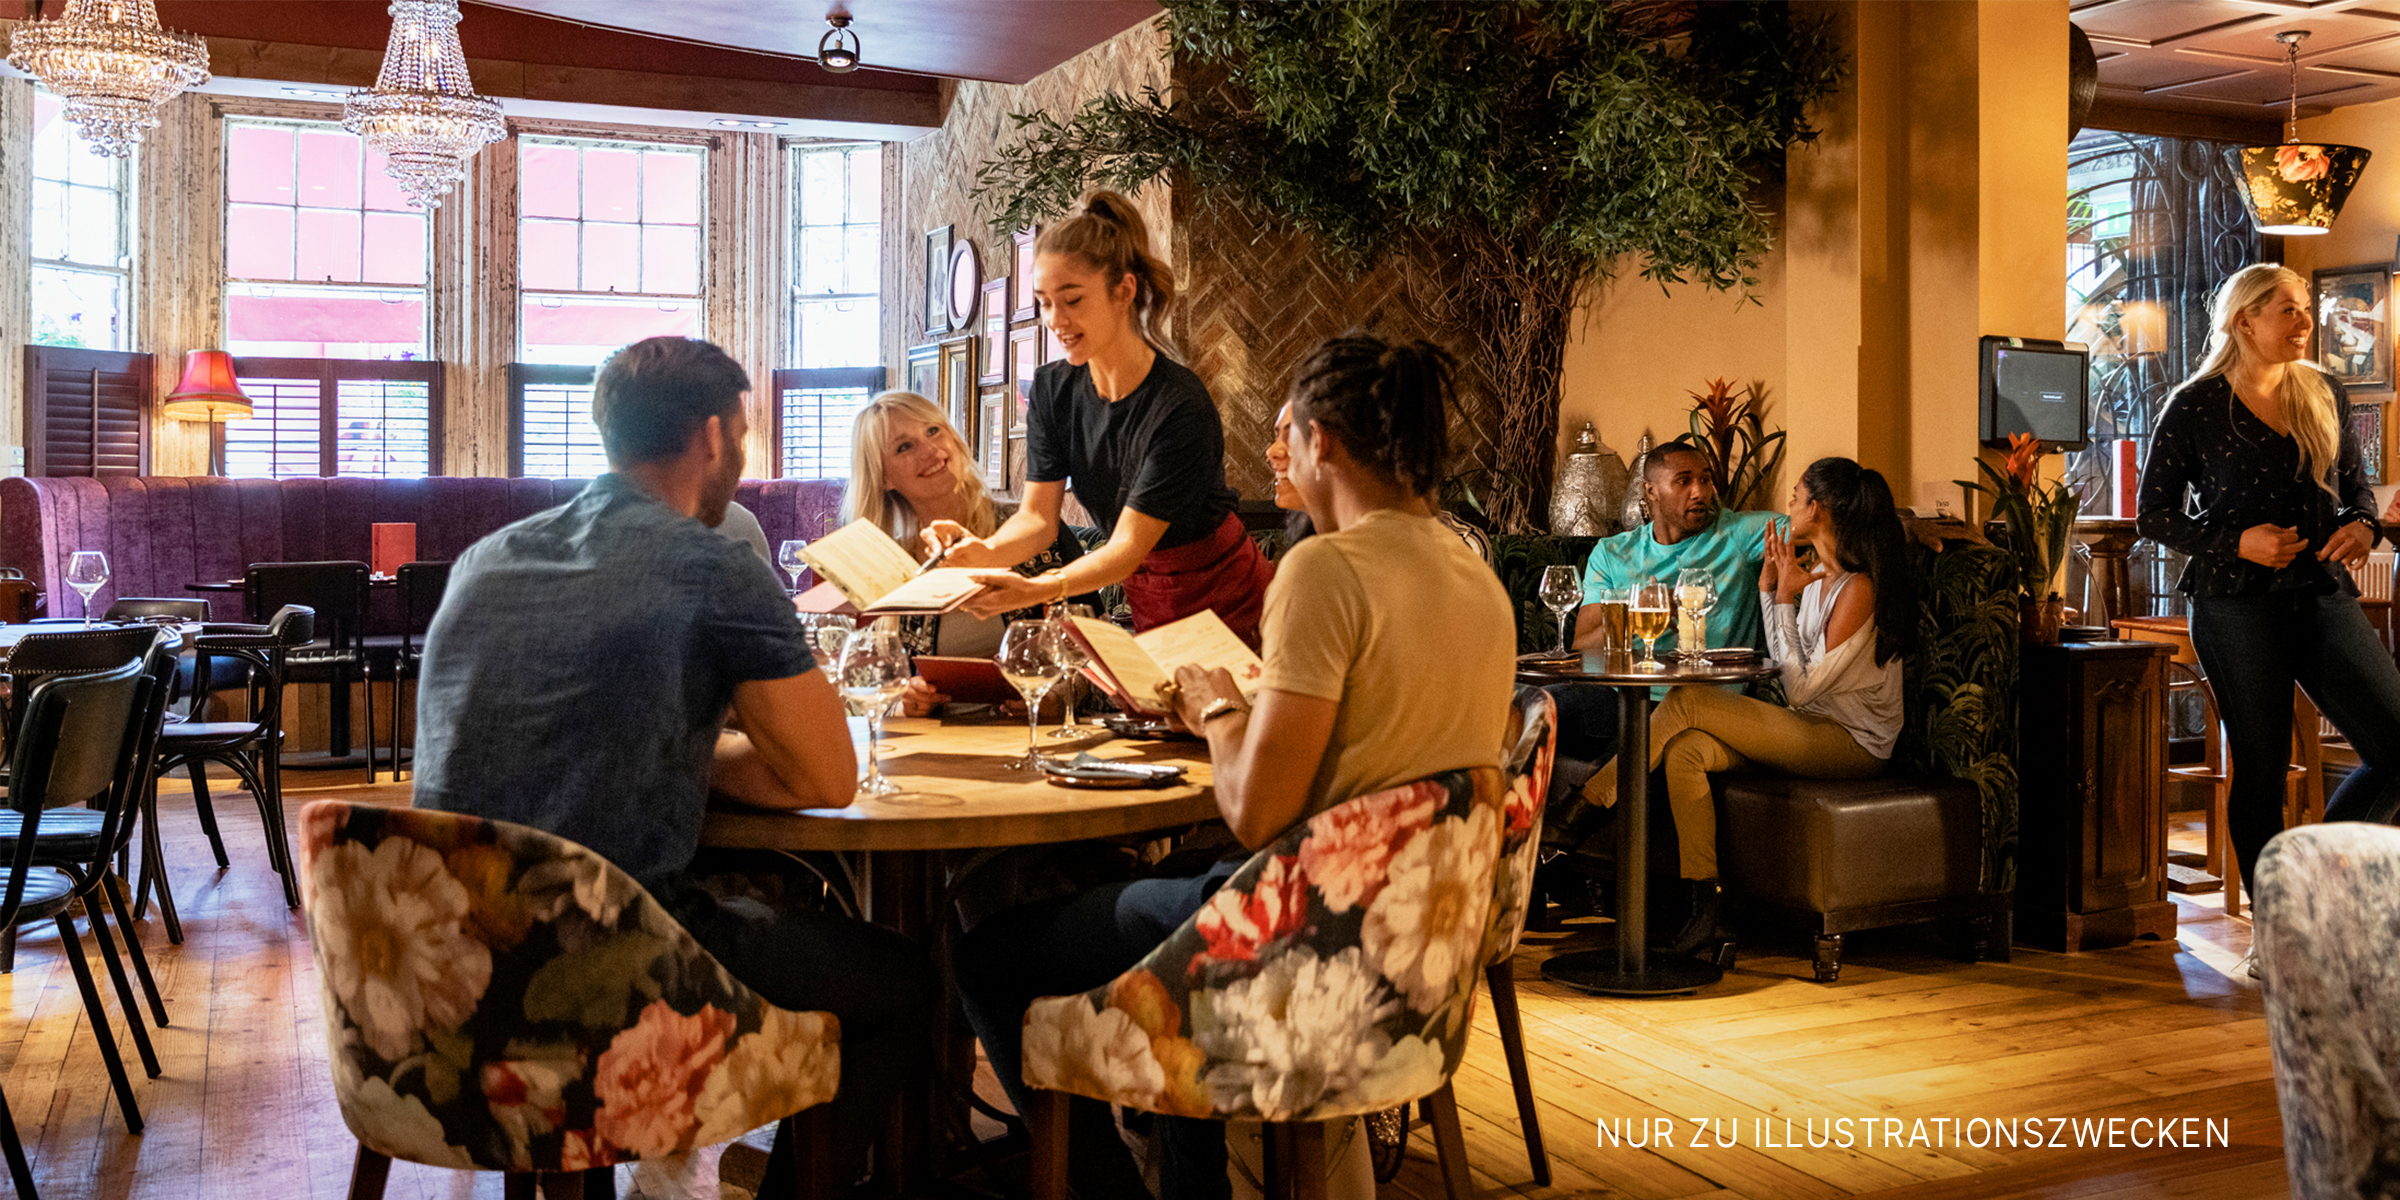 Menschen beim Essen in einem Restaurant | Quelle: Shutterstock